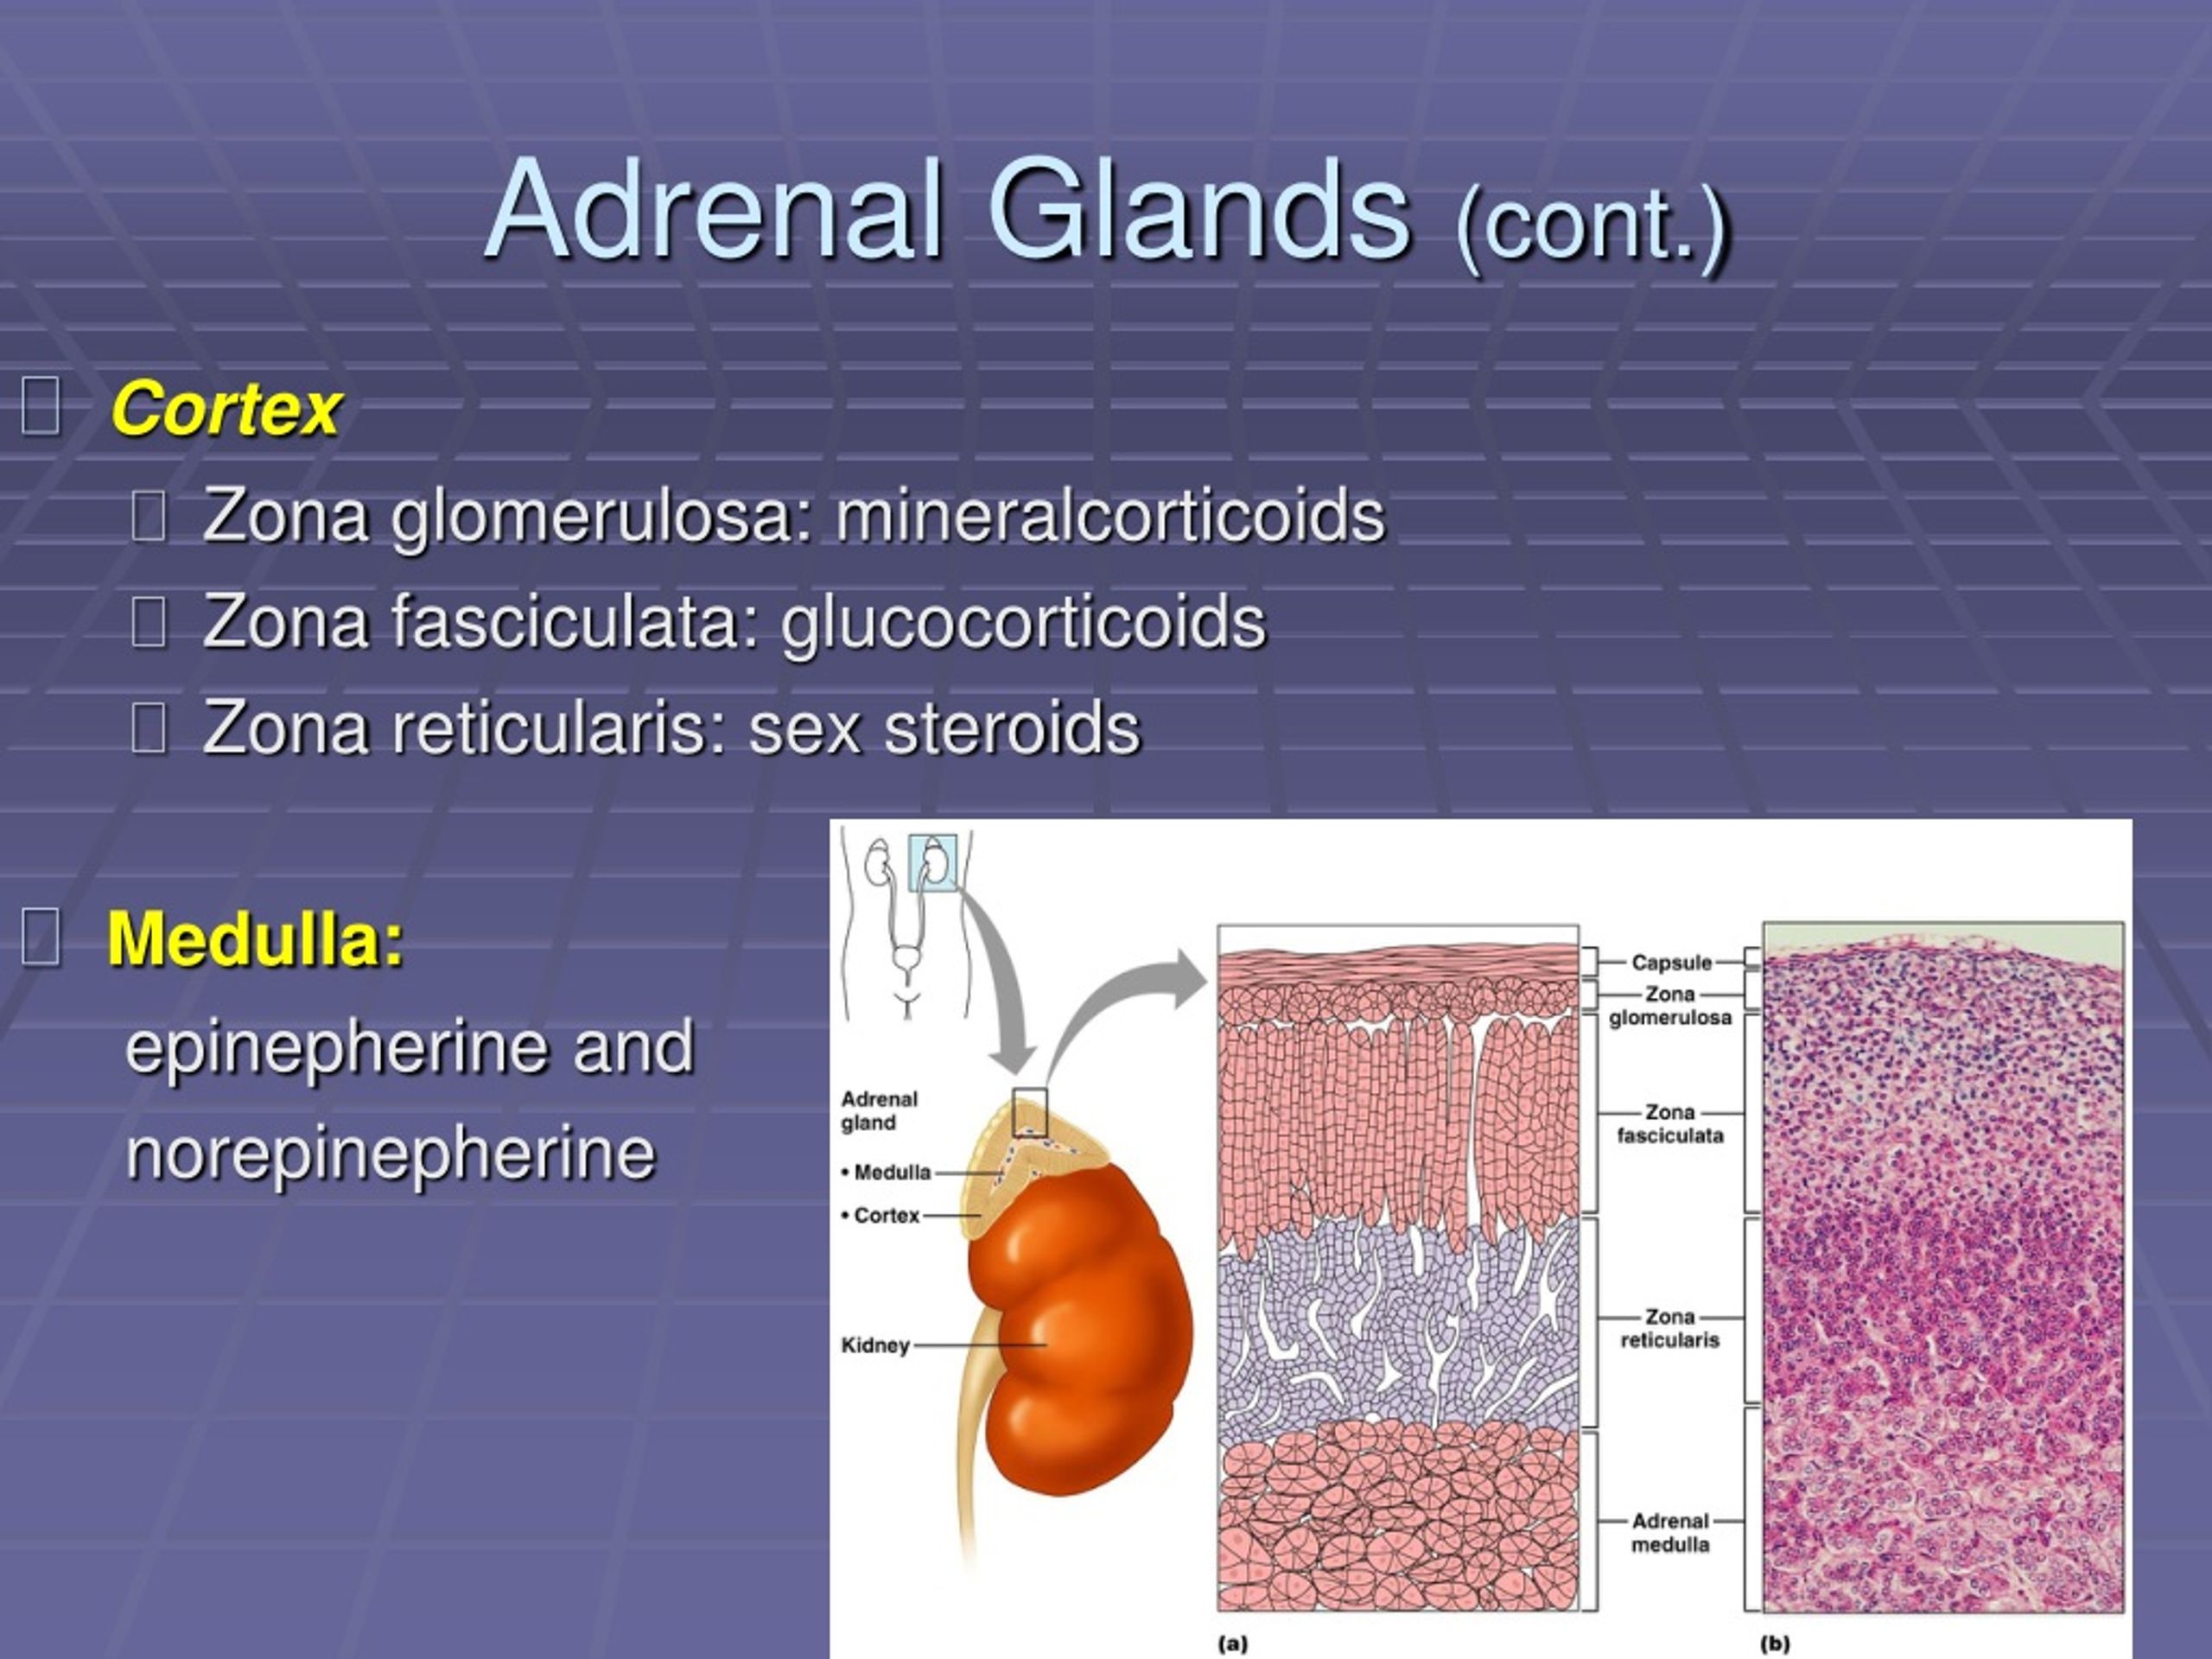 adrenal medulla secretes